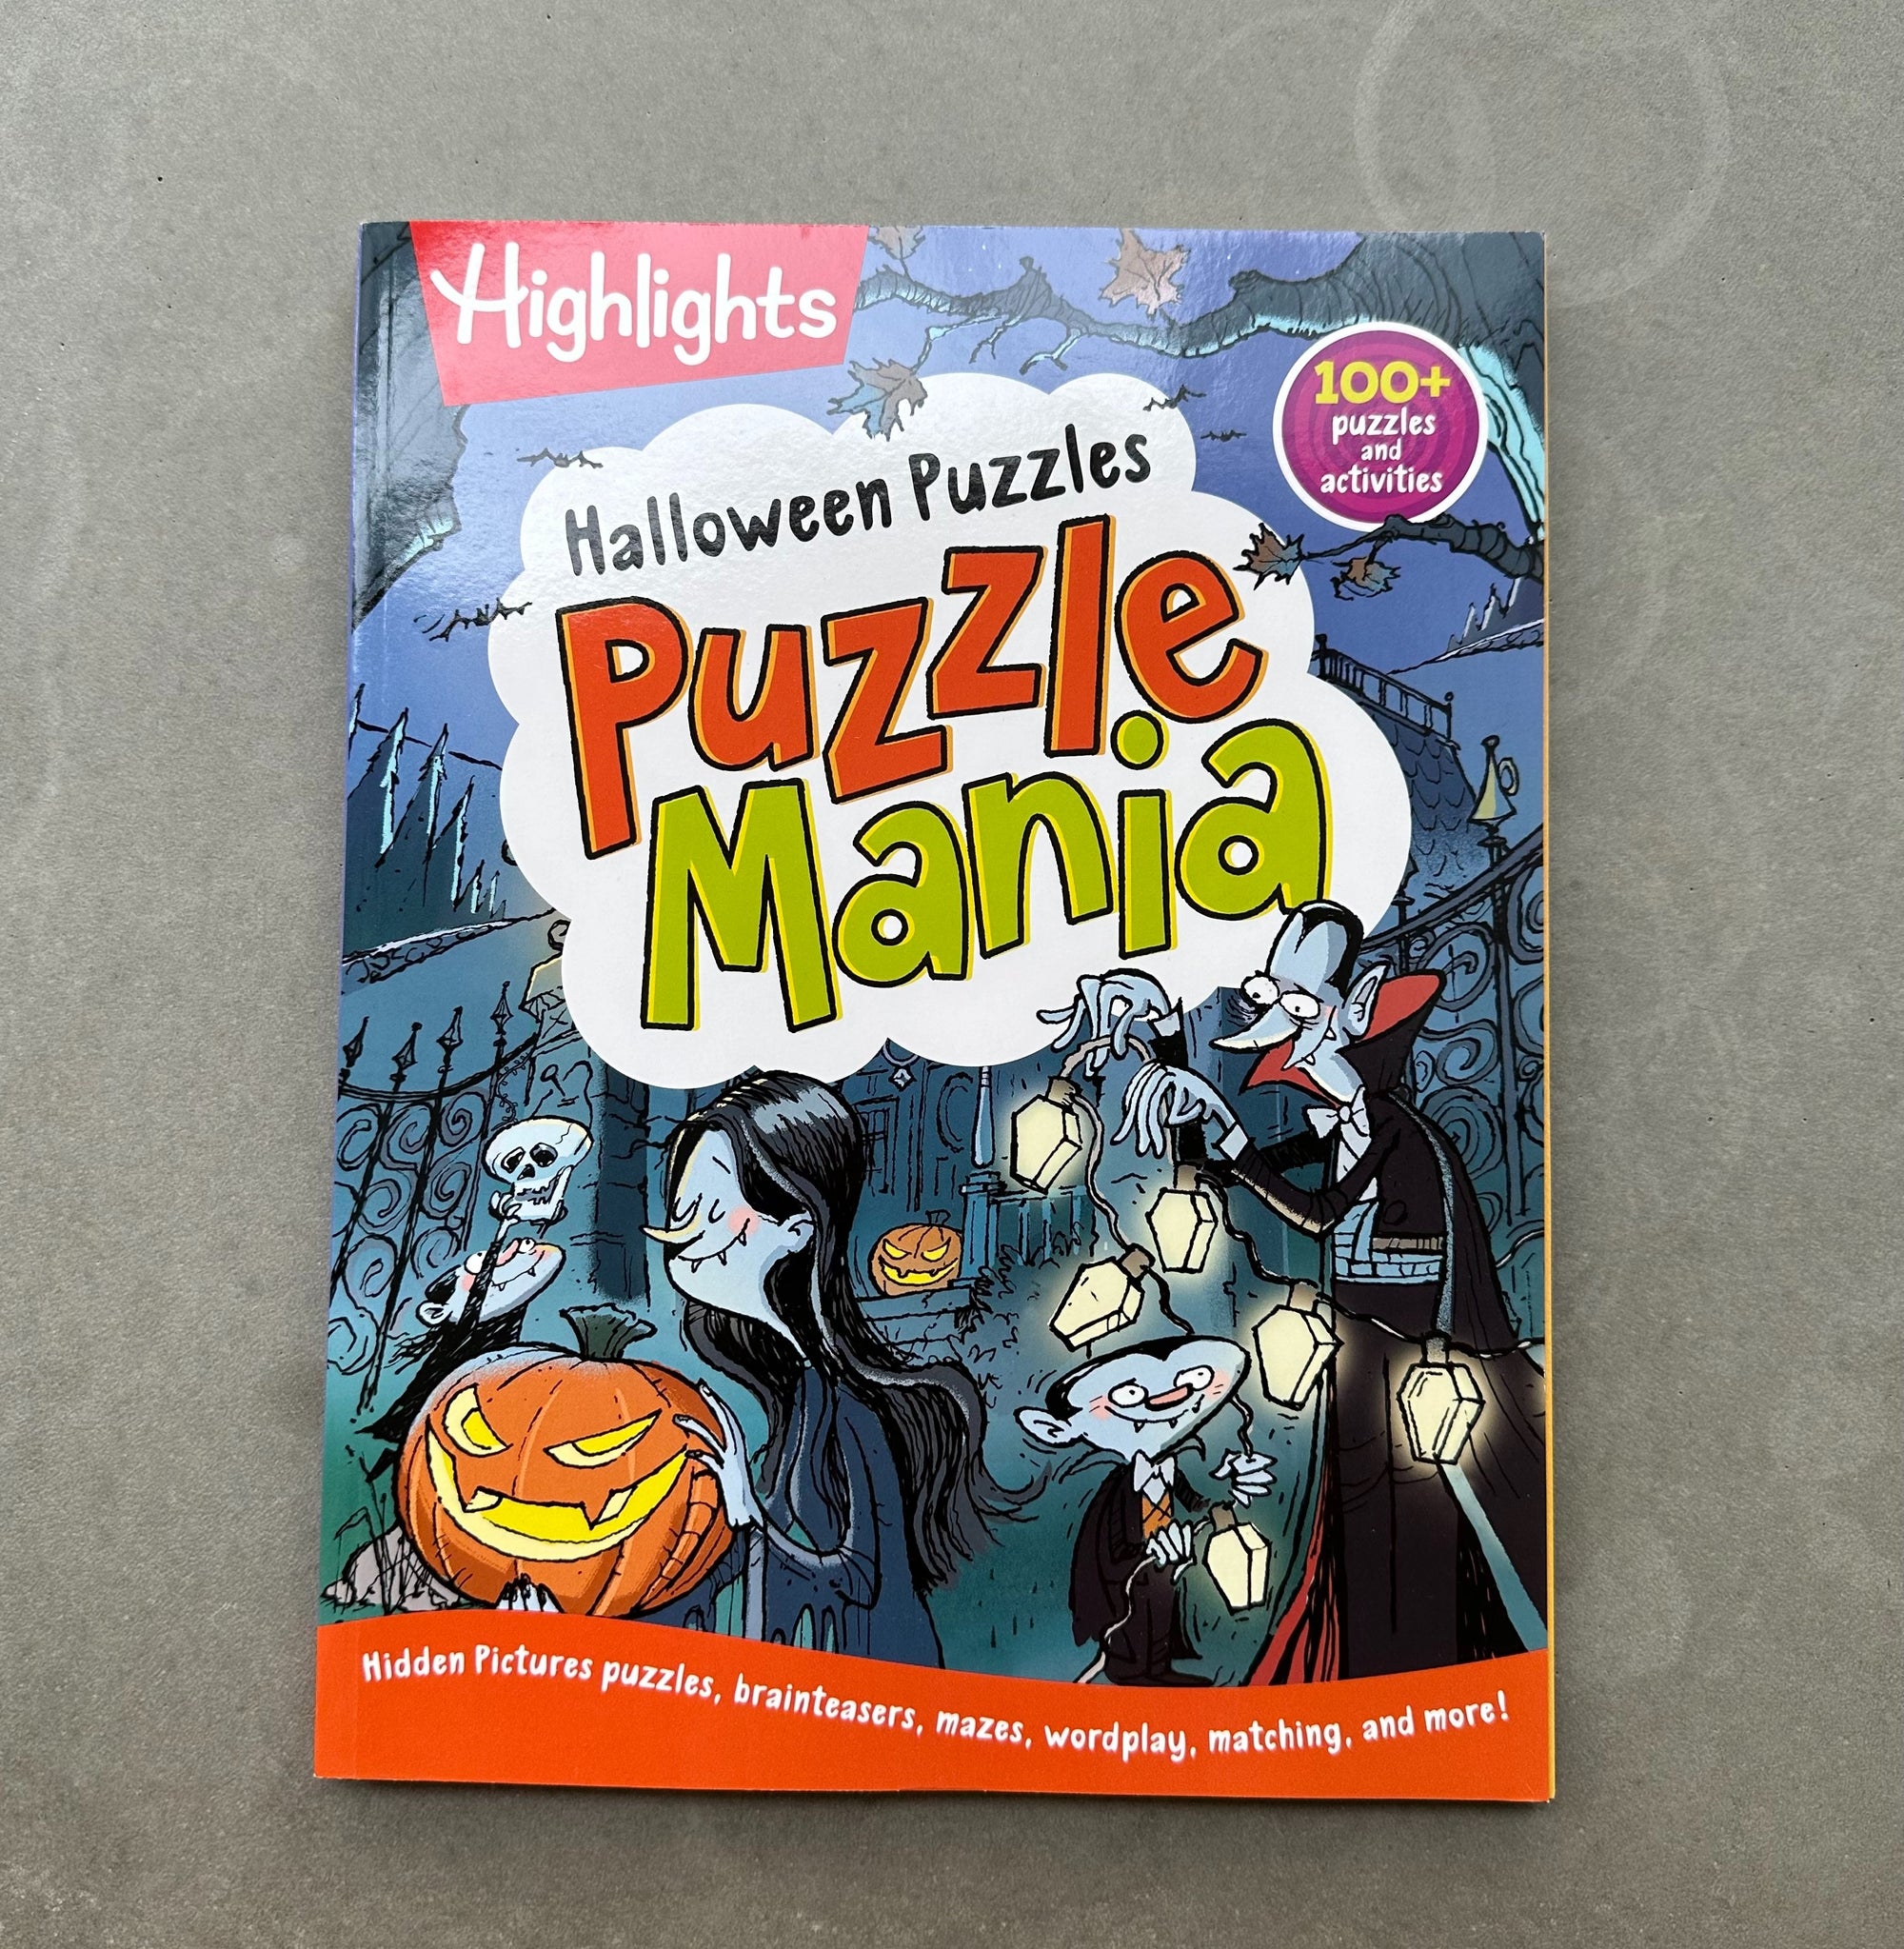 Halloween puzzle mania